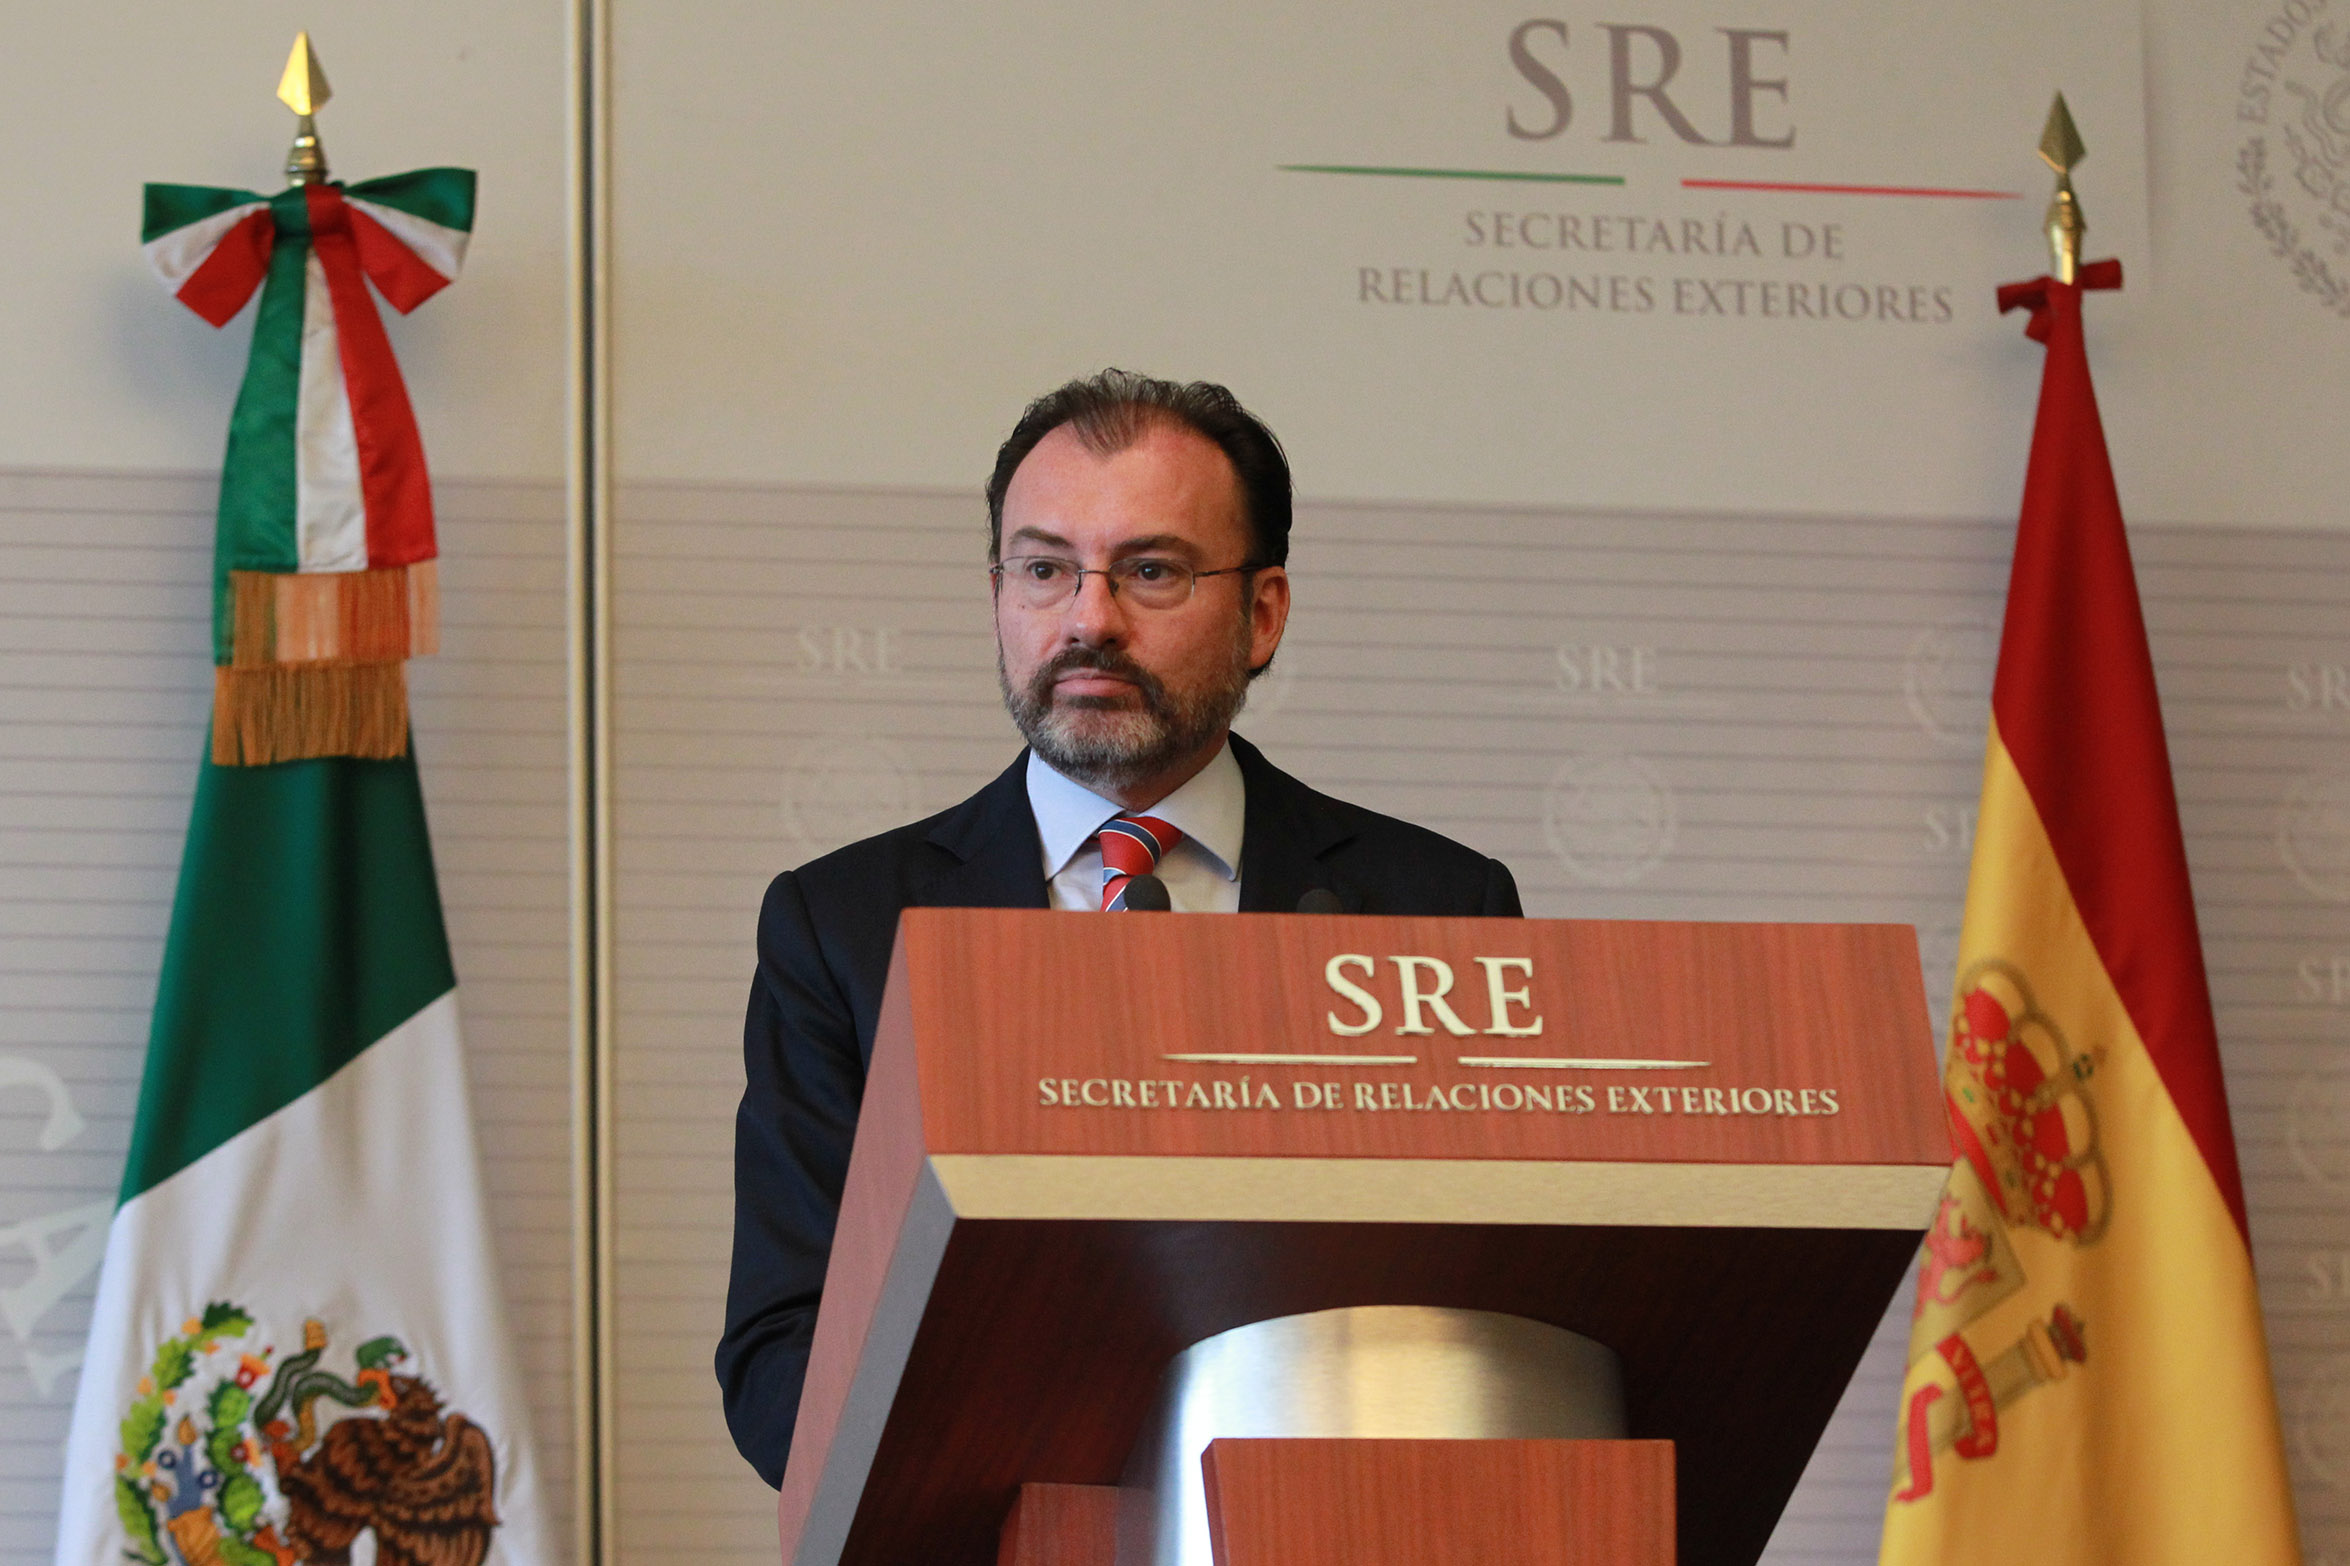 El secretario de Relaciones Exteriores, Luis Videgaray, recibió al ministro de Relaciones Exteriores y Cooperación de España, Alfonso de María Dastis Quecedo, en las instalaciones de Relaciones Exteriores. (Notimex)